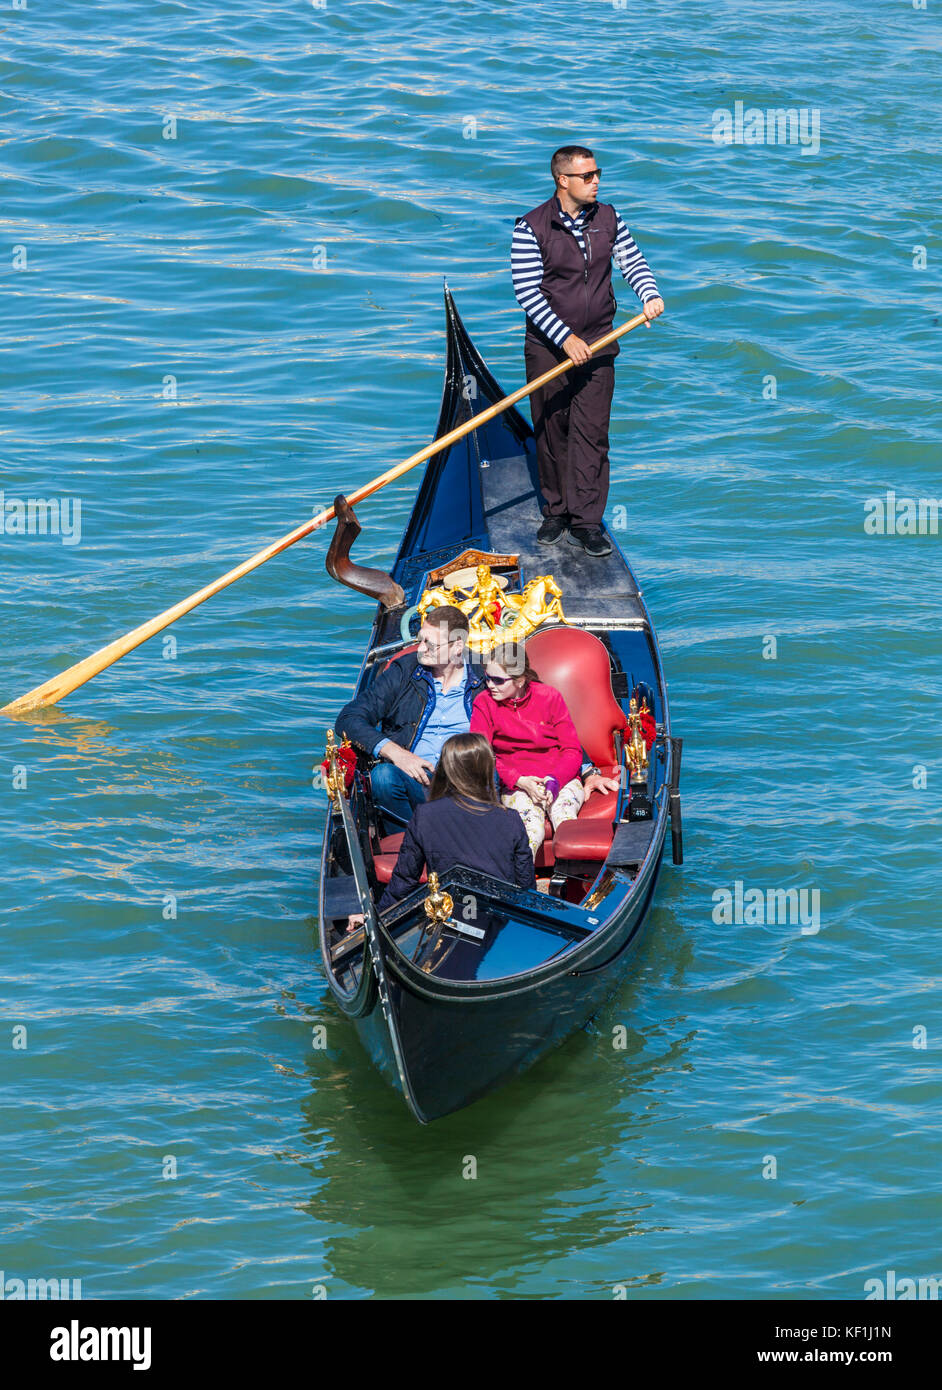 Venise ITALIE VENISE Gondolier aviron une gondole pleine de touristes sur une gondole sur le grand canal Venise Italie Europe de l'UE Banque D'Images